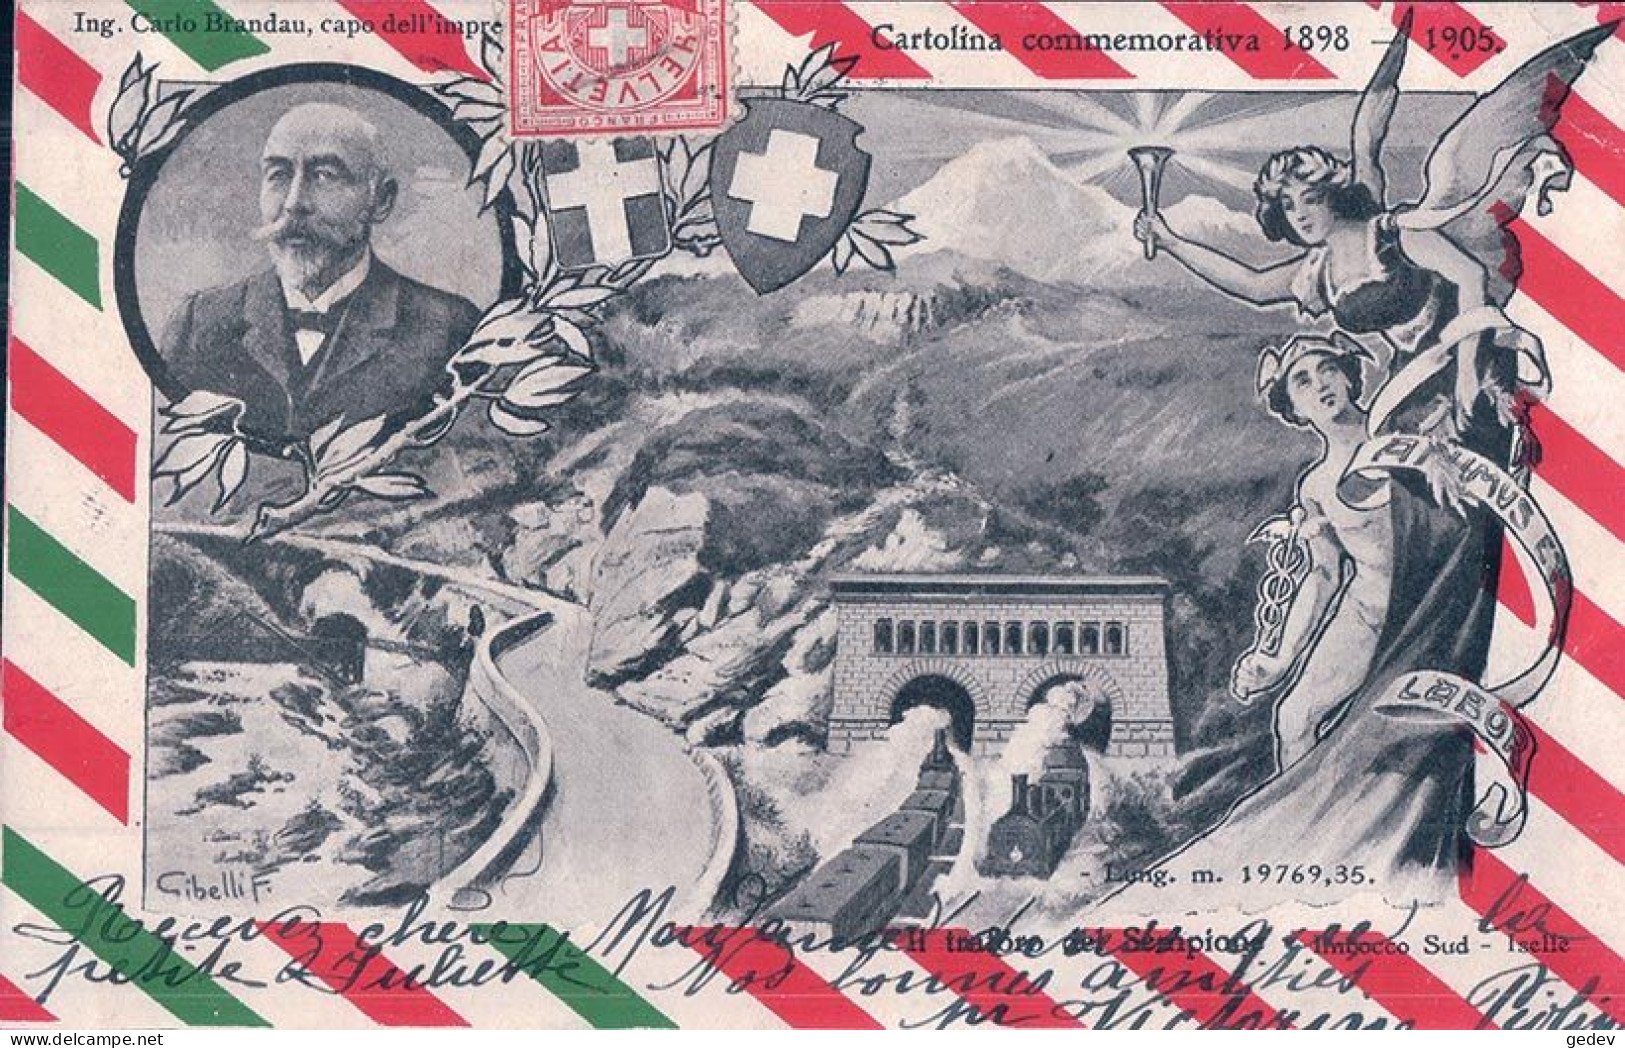 Cartolina Commemorativa 1898 - 1905, L Traforo Del Sempione, Imbocco Sud, Iselle, Illustrateur Gibelli F. (11.4.1905) - Structures